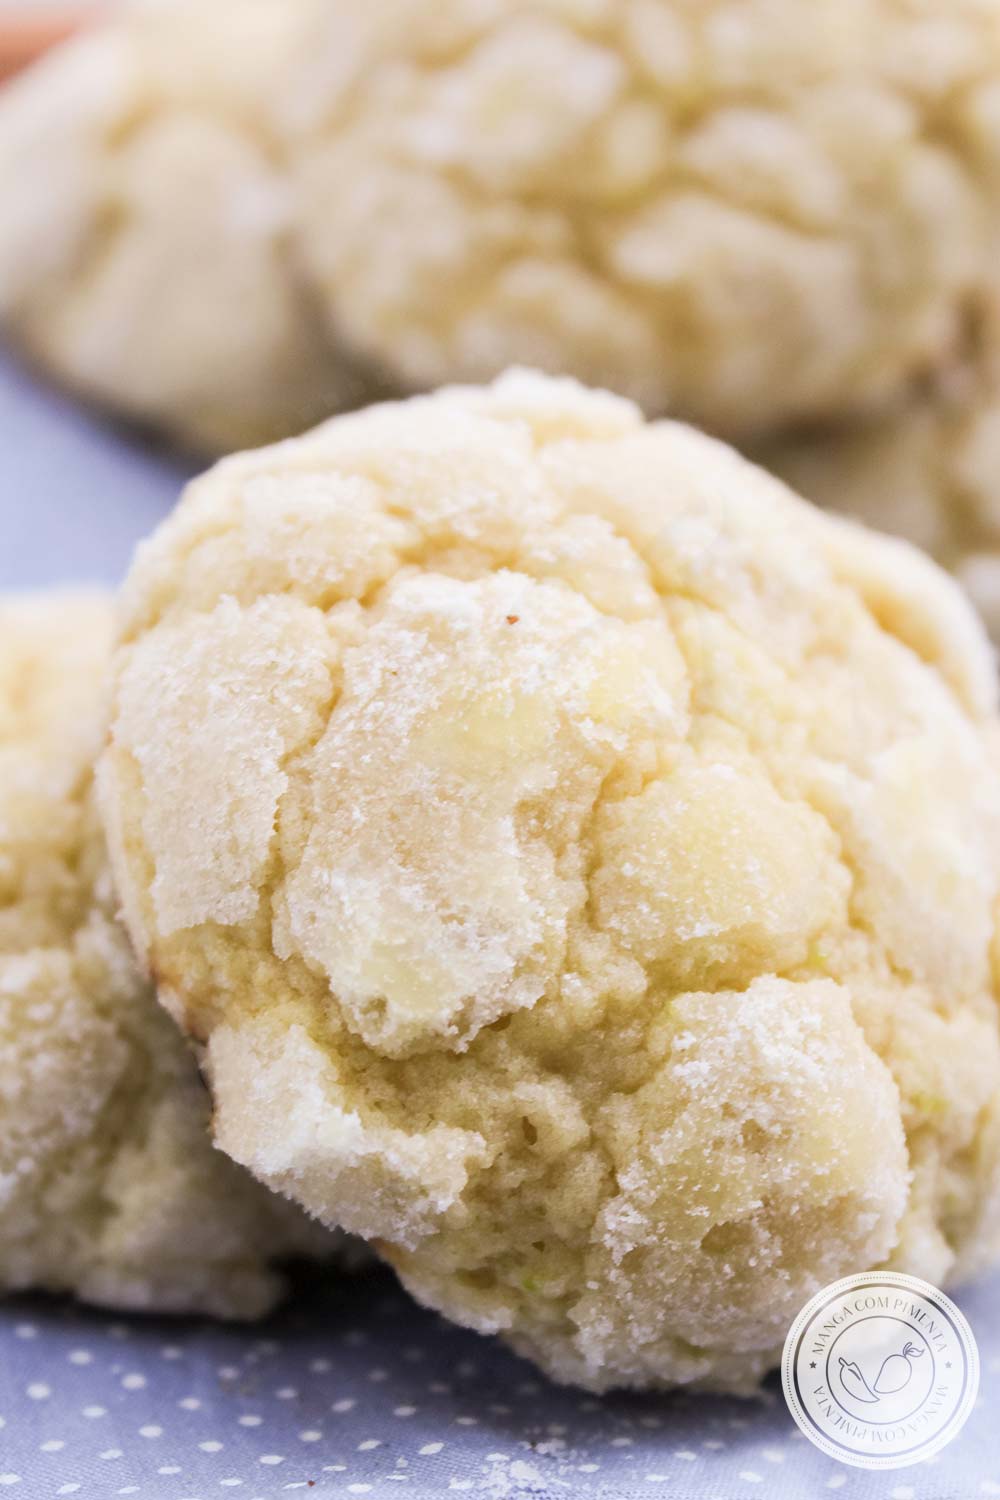 Crinkle Cookies de Limão - um delicioso biscoito para servir no chá da tarde com os amigos!